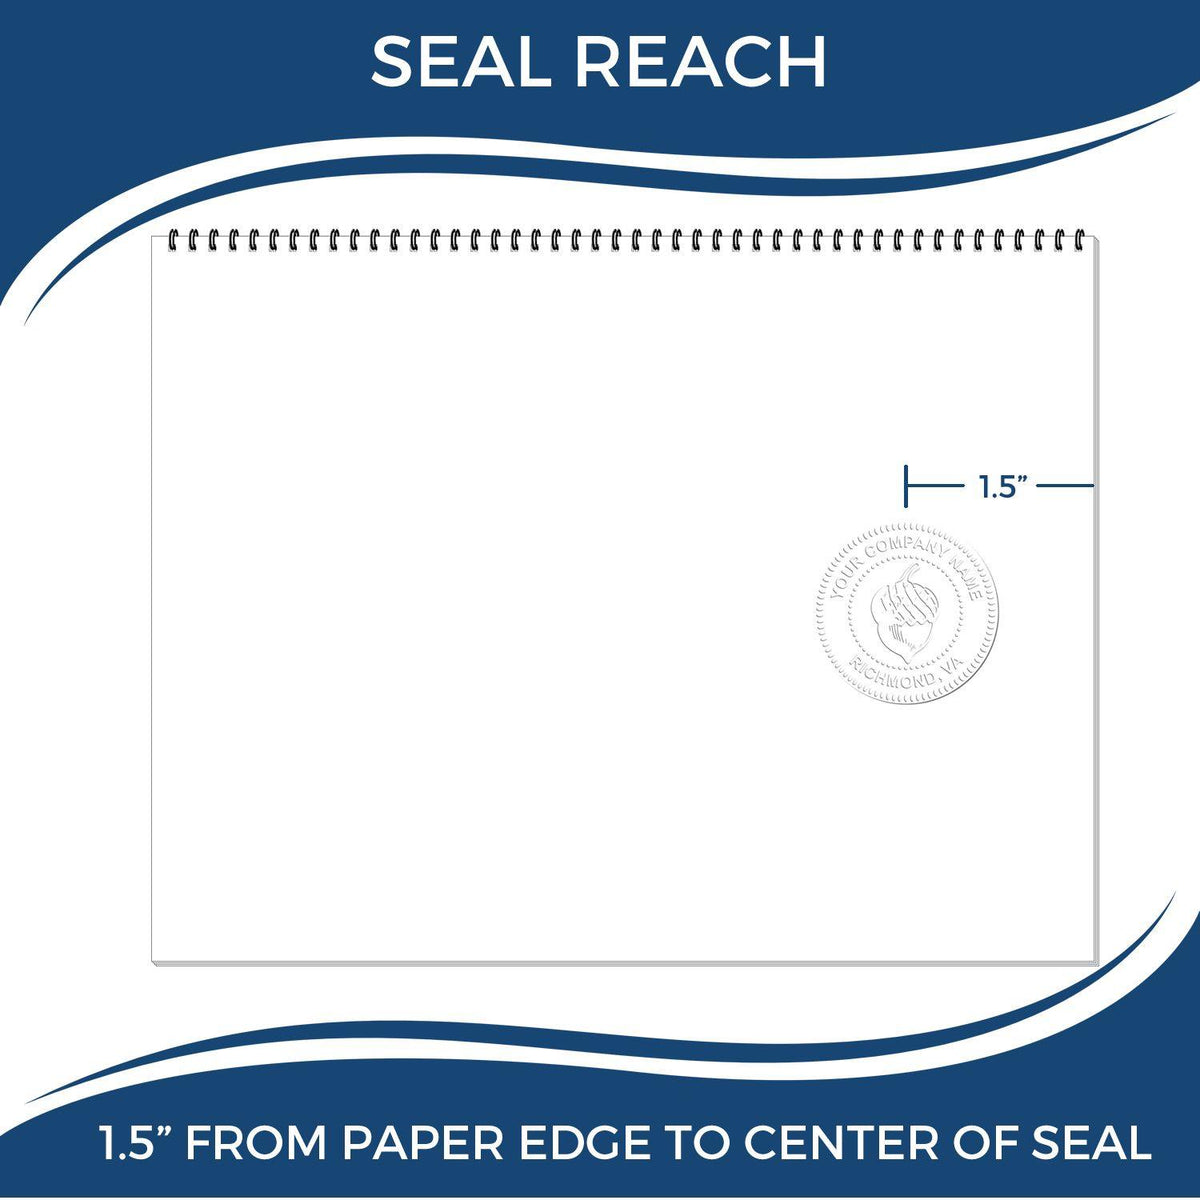 Professional Handheld Seal Embosser - Engineer Seal Stamps - Embosser Type_Handheld, Type of Use_Professional